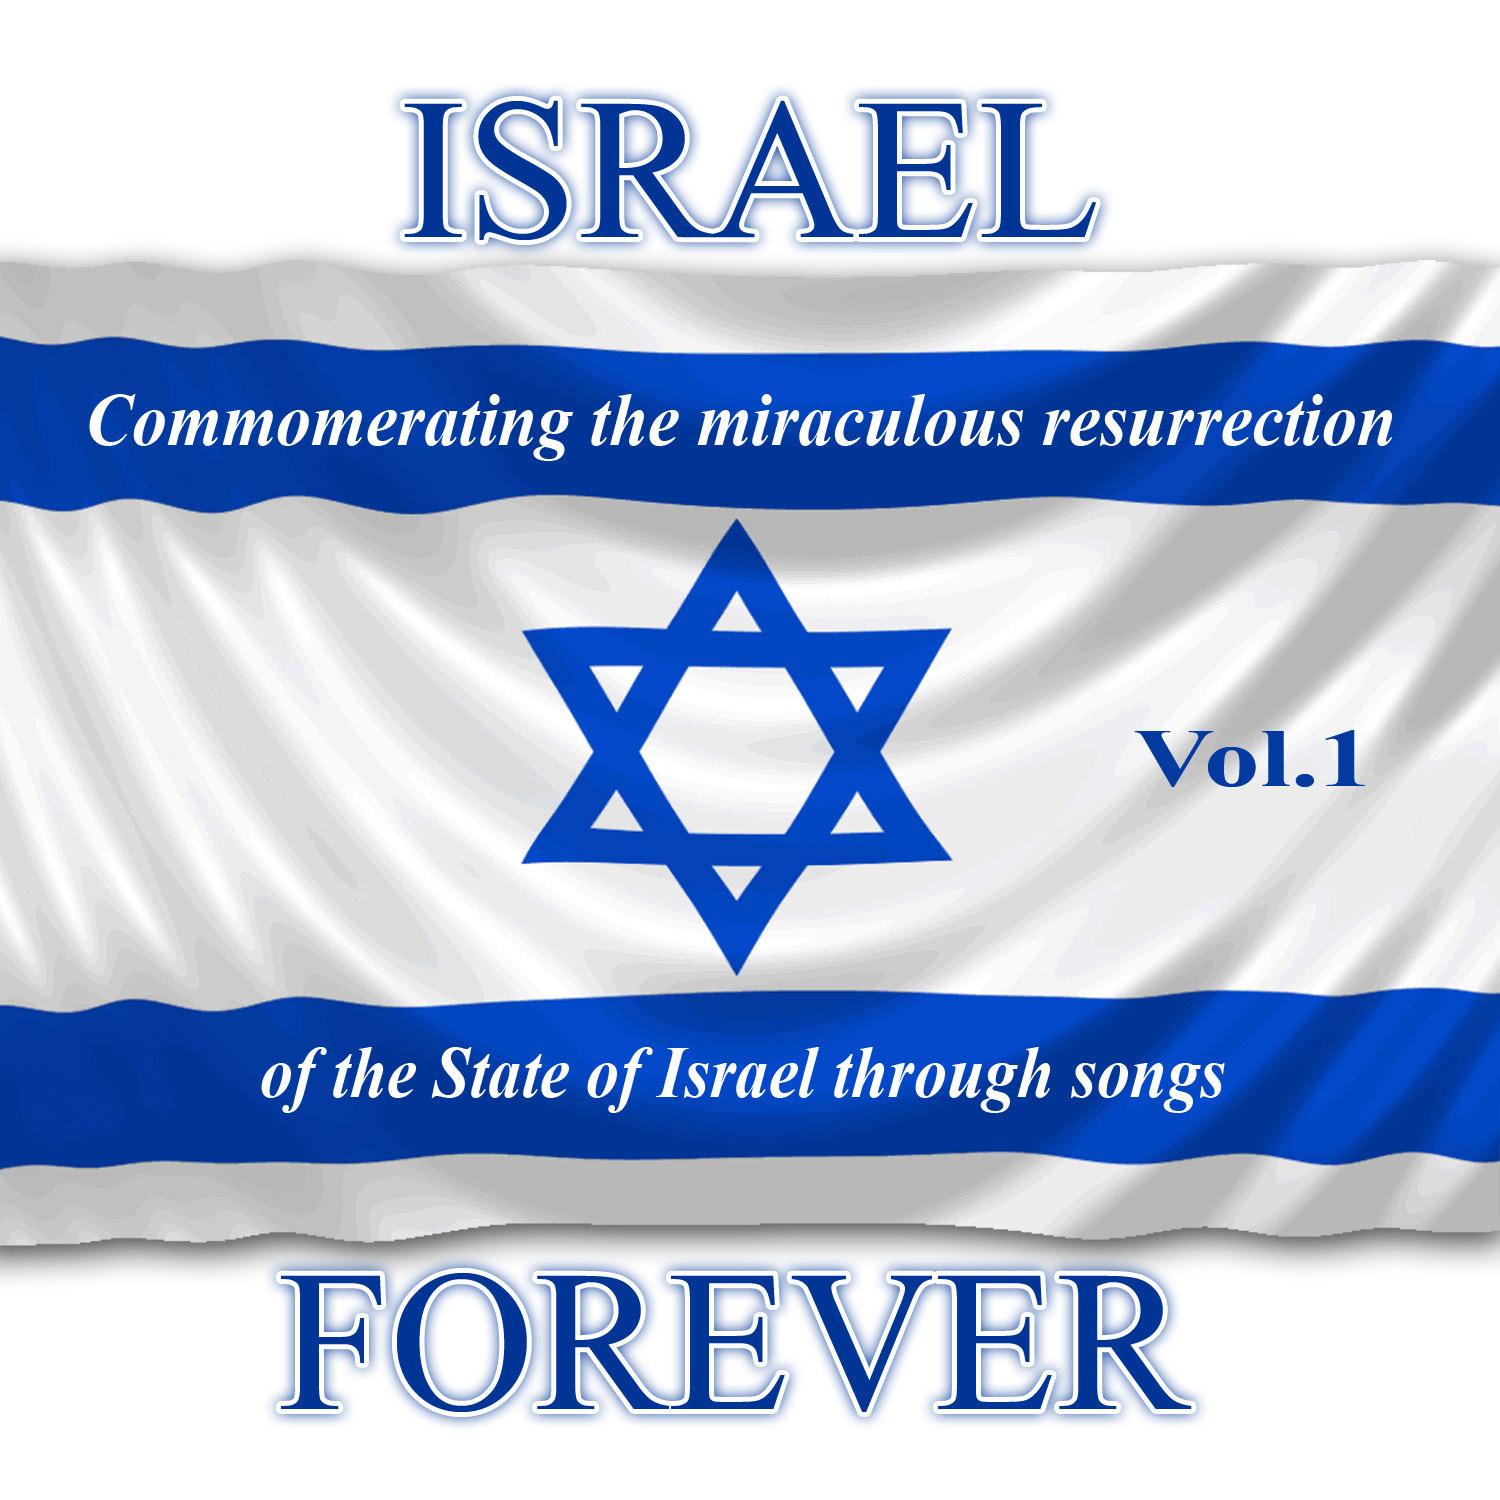 Israel Forever Volume 1